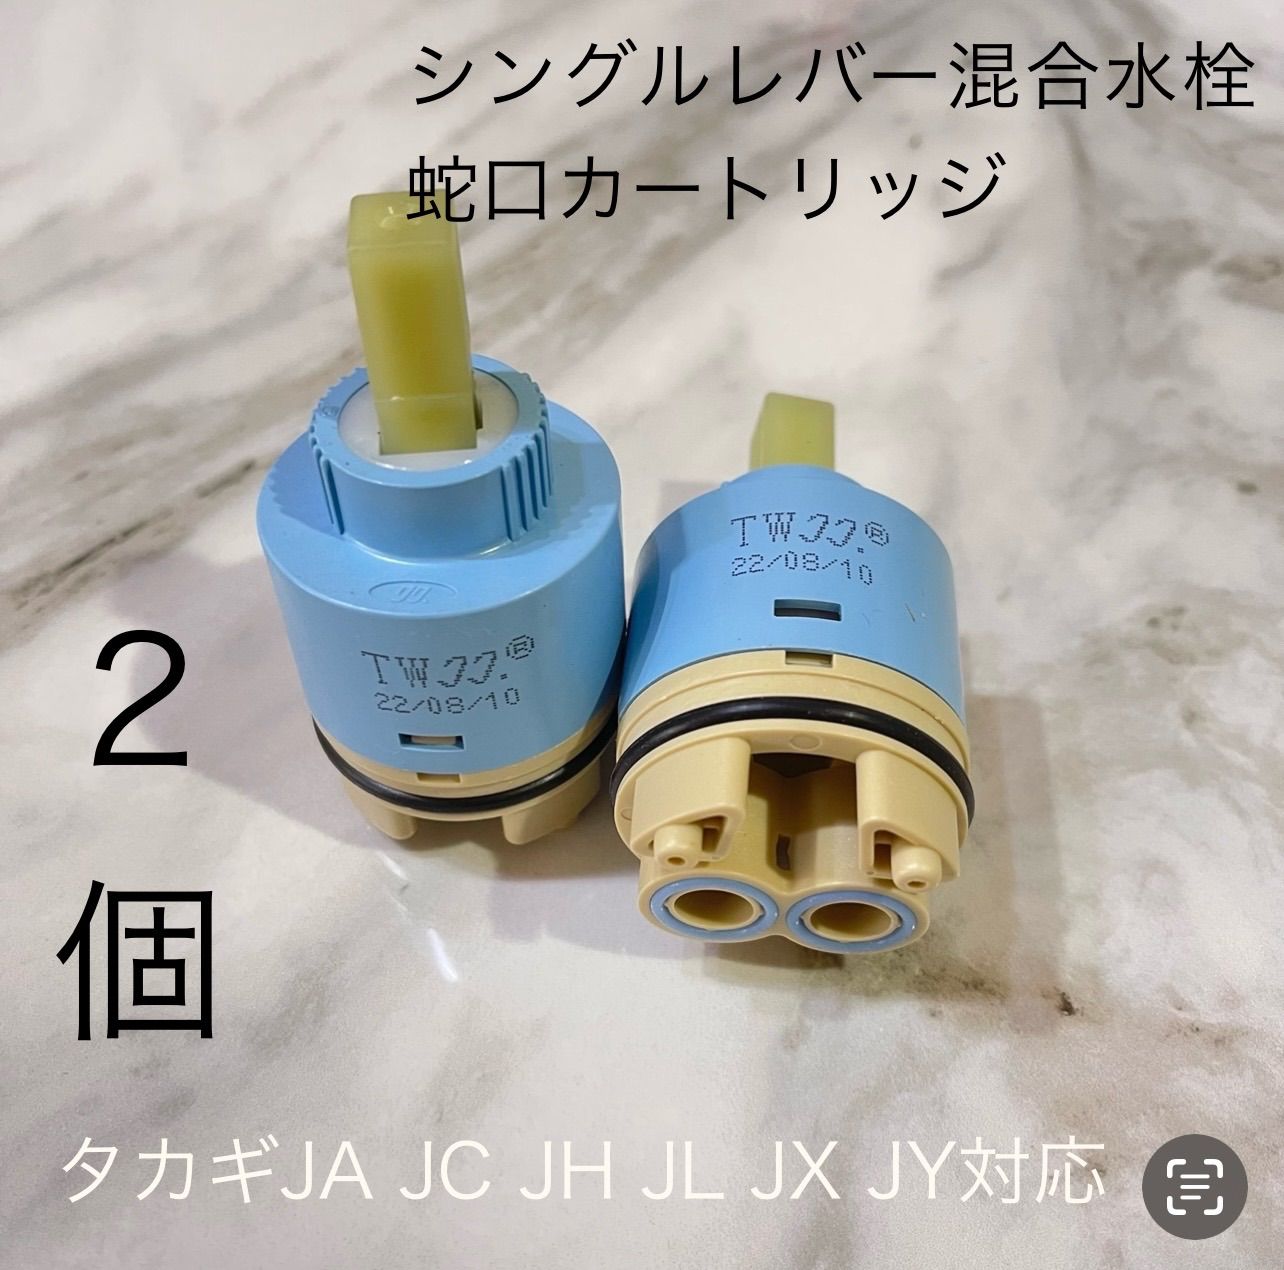 2個 タカギ水栓蛇口カートリッジタカギJX JA JG JL JH JC JYシリーズ 